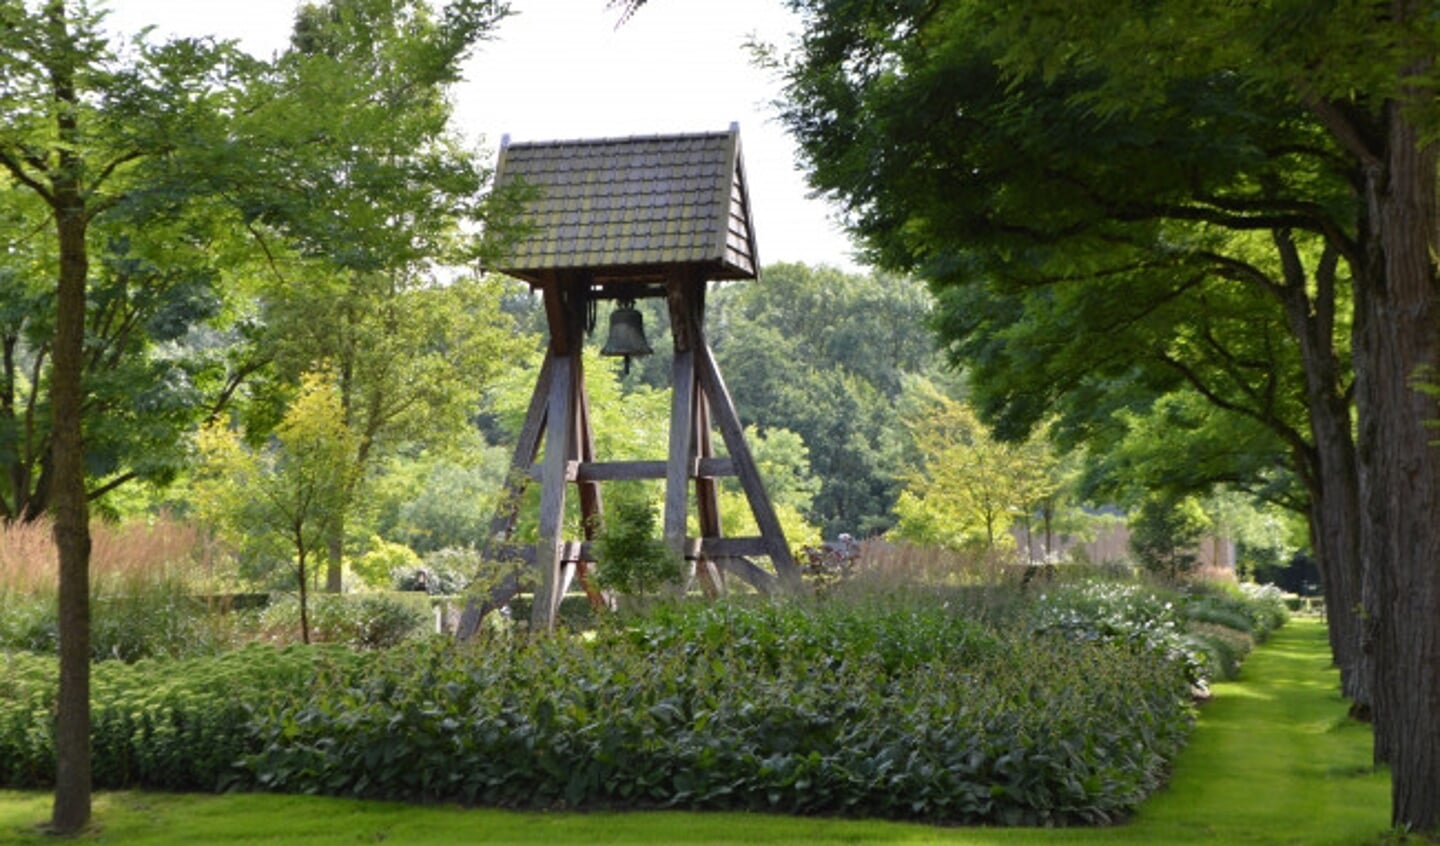  Begraafplaats De Wissel in Dronten.